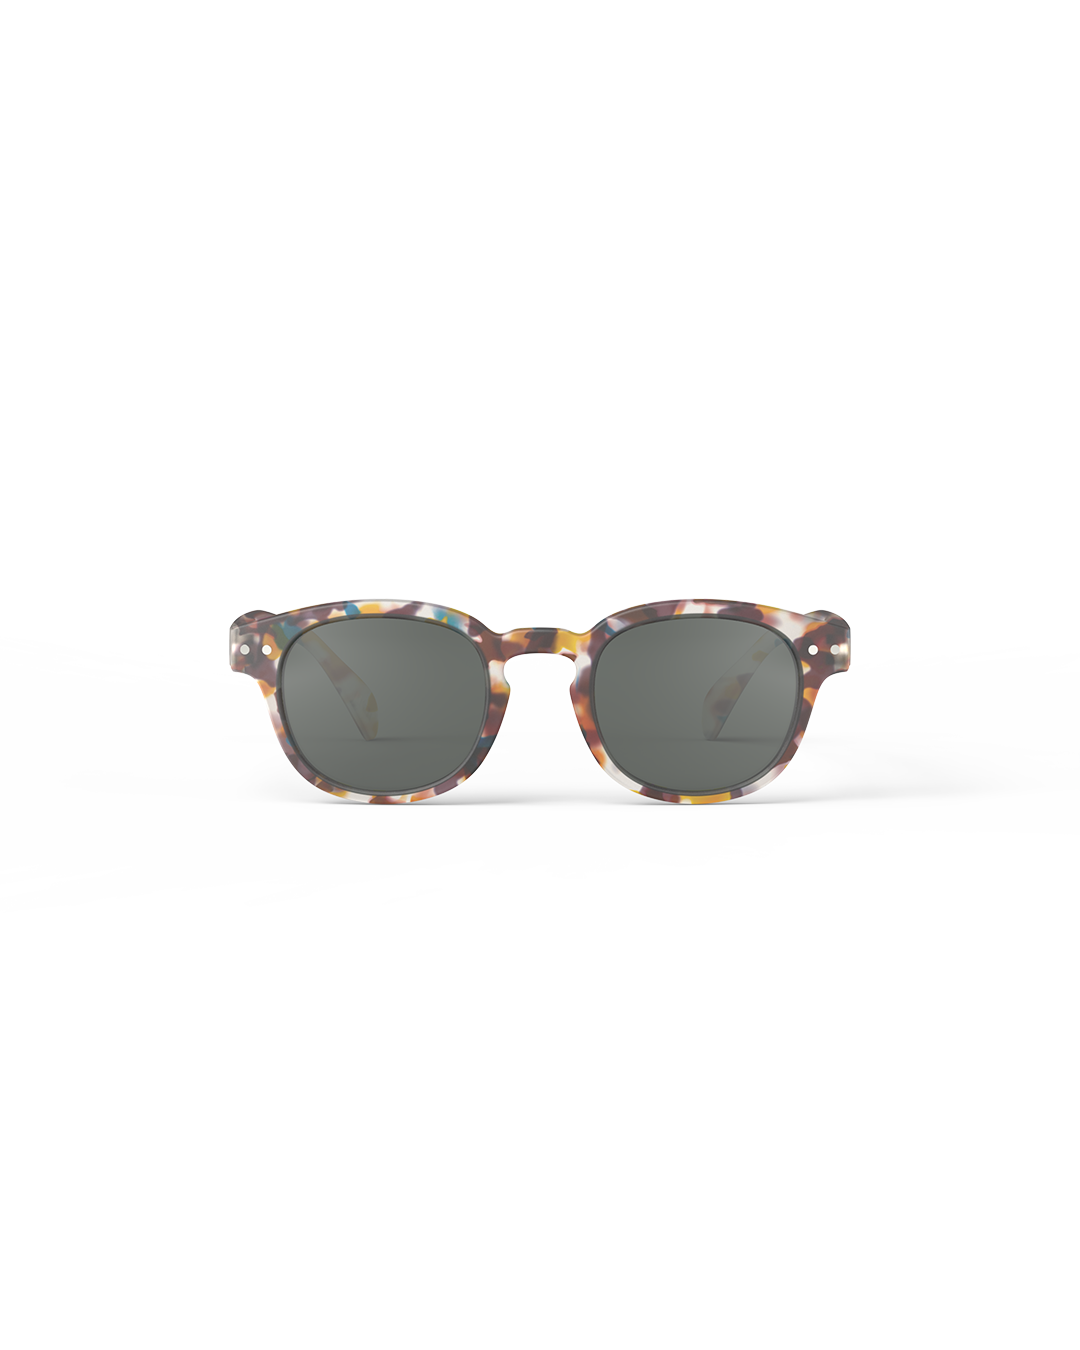 Izipizi Sunglasses Junior | C Blue Tortoise Grey Lenses 5-10Y